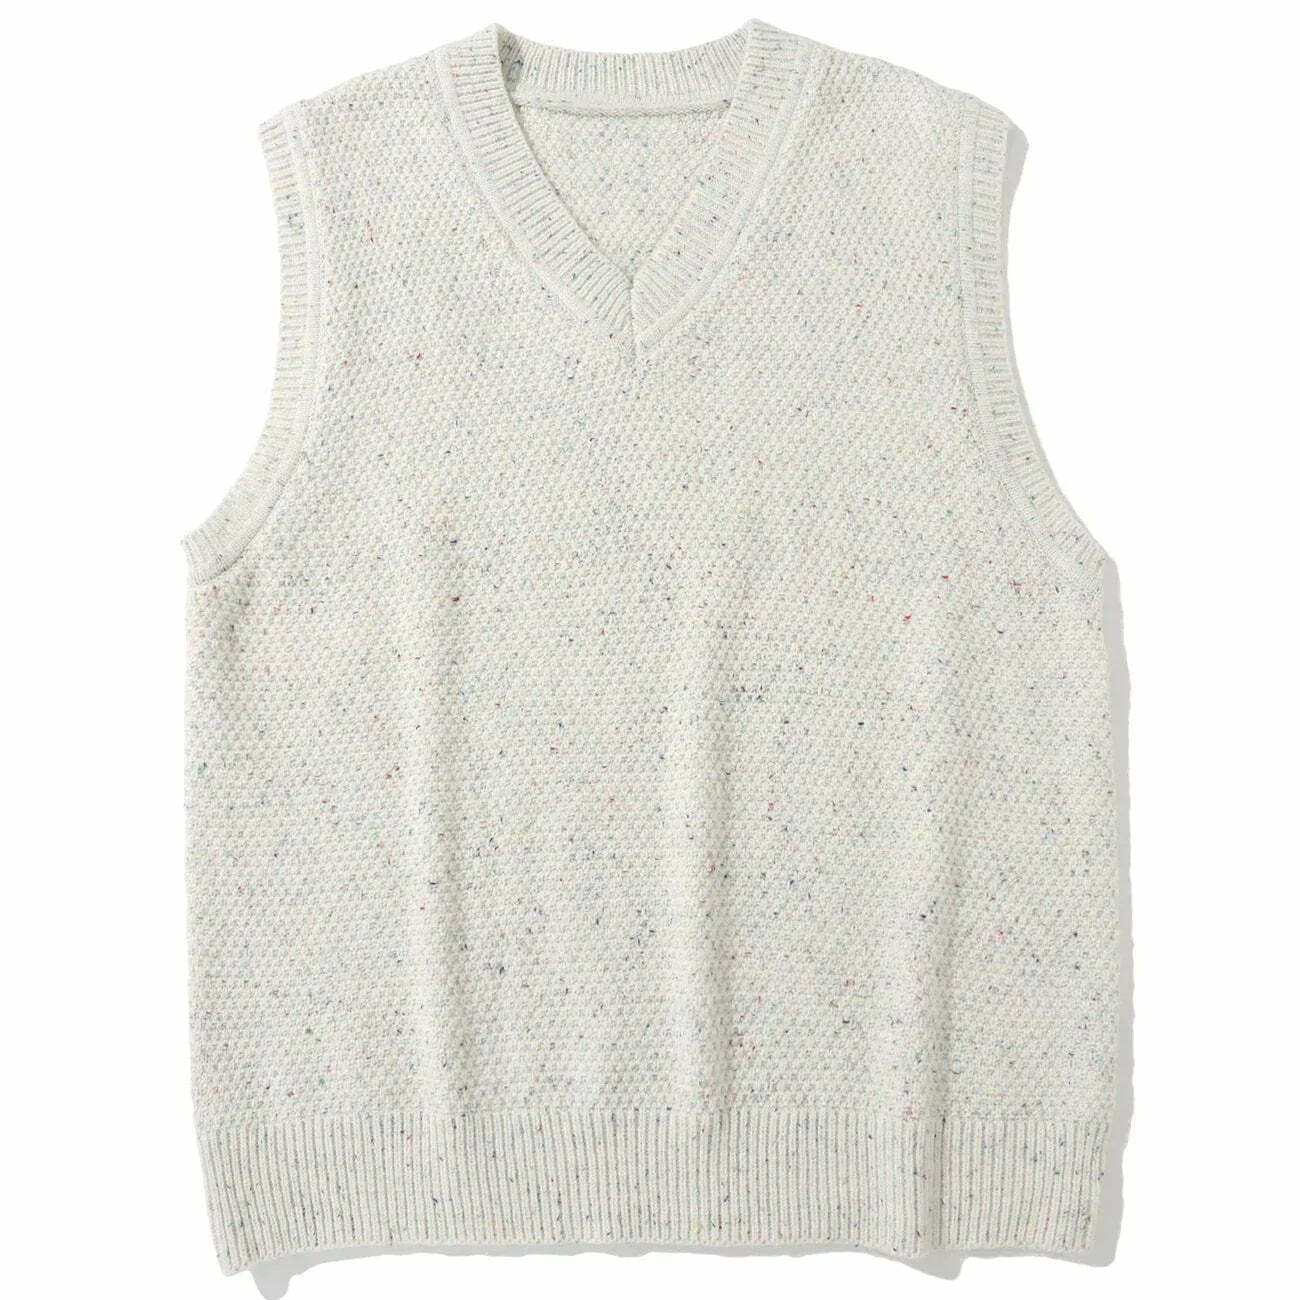 y2k vintage sweater vest edgy streetwear essential 4536